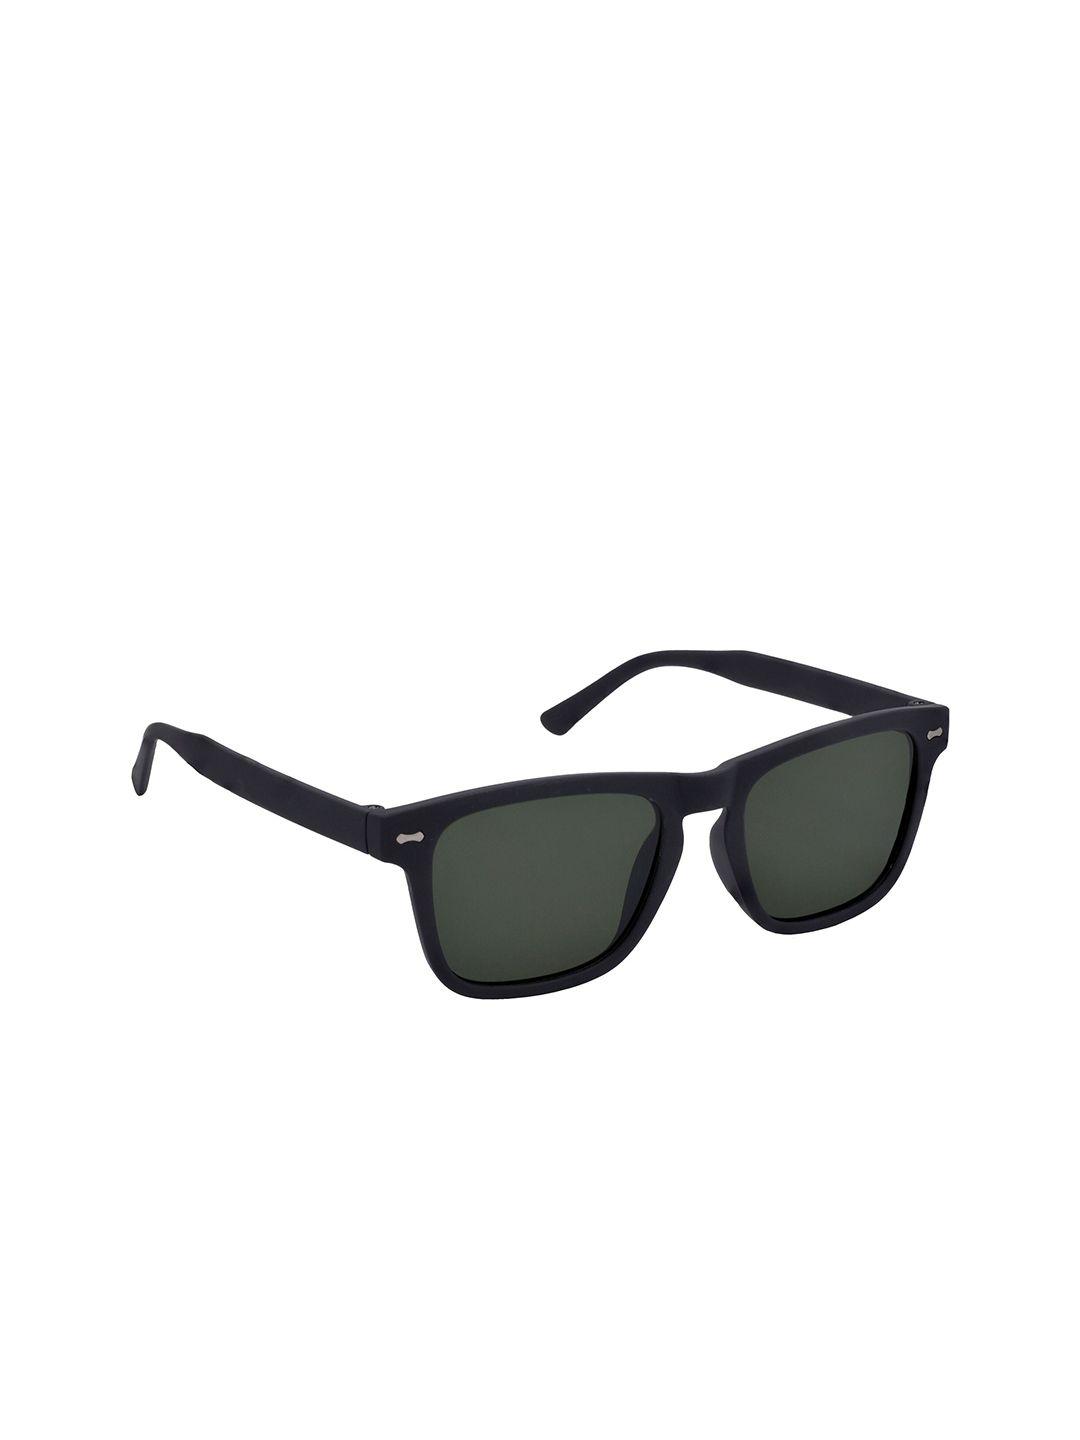 HRINKAR Girls Wayfarer Sunglasses with UV Protected Lens-HRS593-BK-GRN